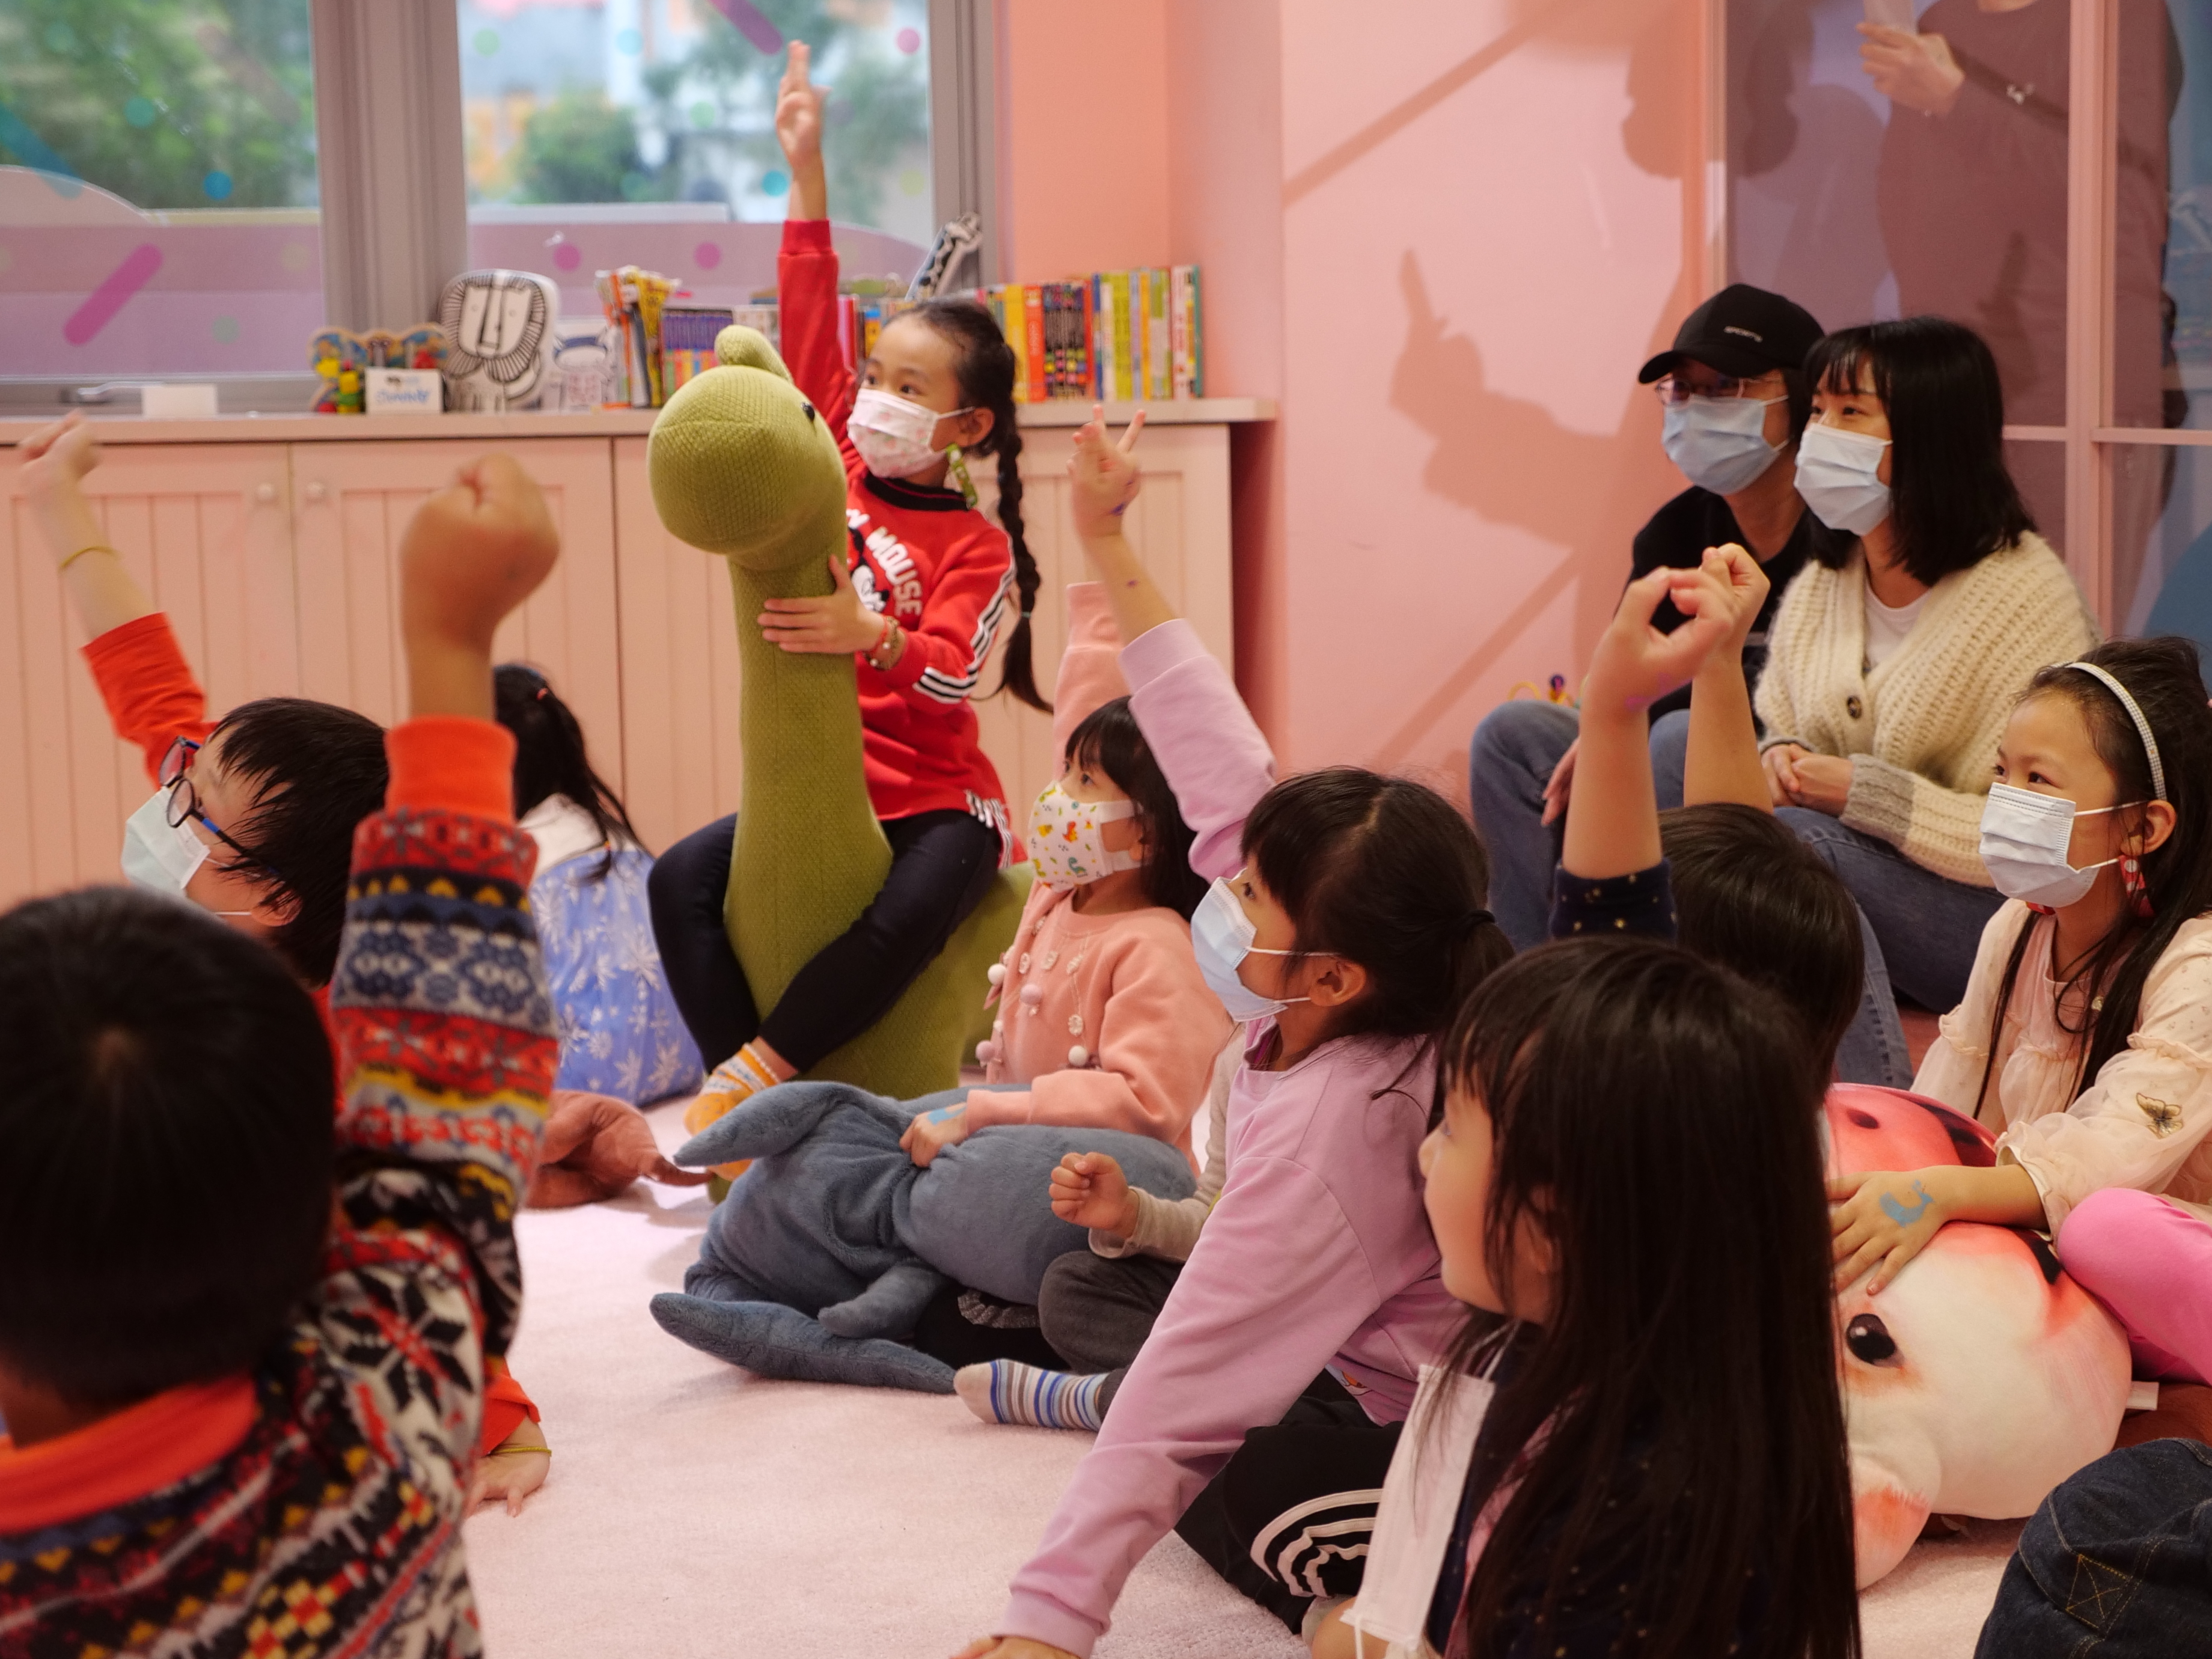 ภายในงานมีการจัดกิจกรรมสำหรับเด็ก ๆ โดยเฉพาะ ภาพ/ถ่ายโดย จางหรงหง (張睿弘)